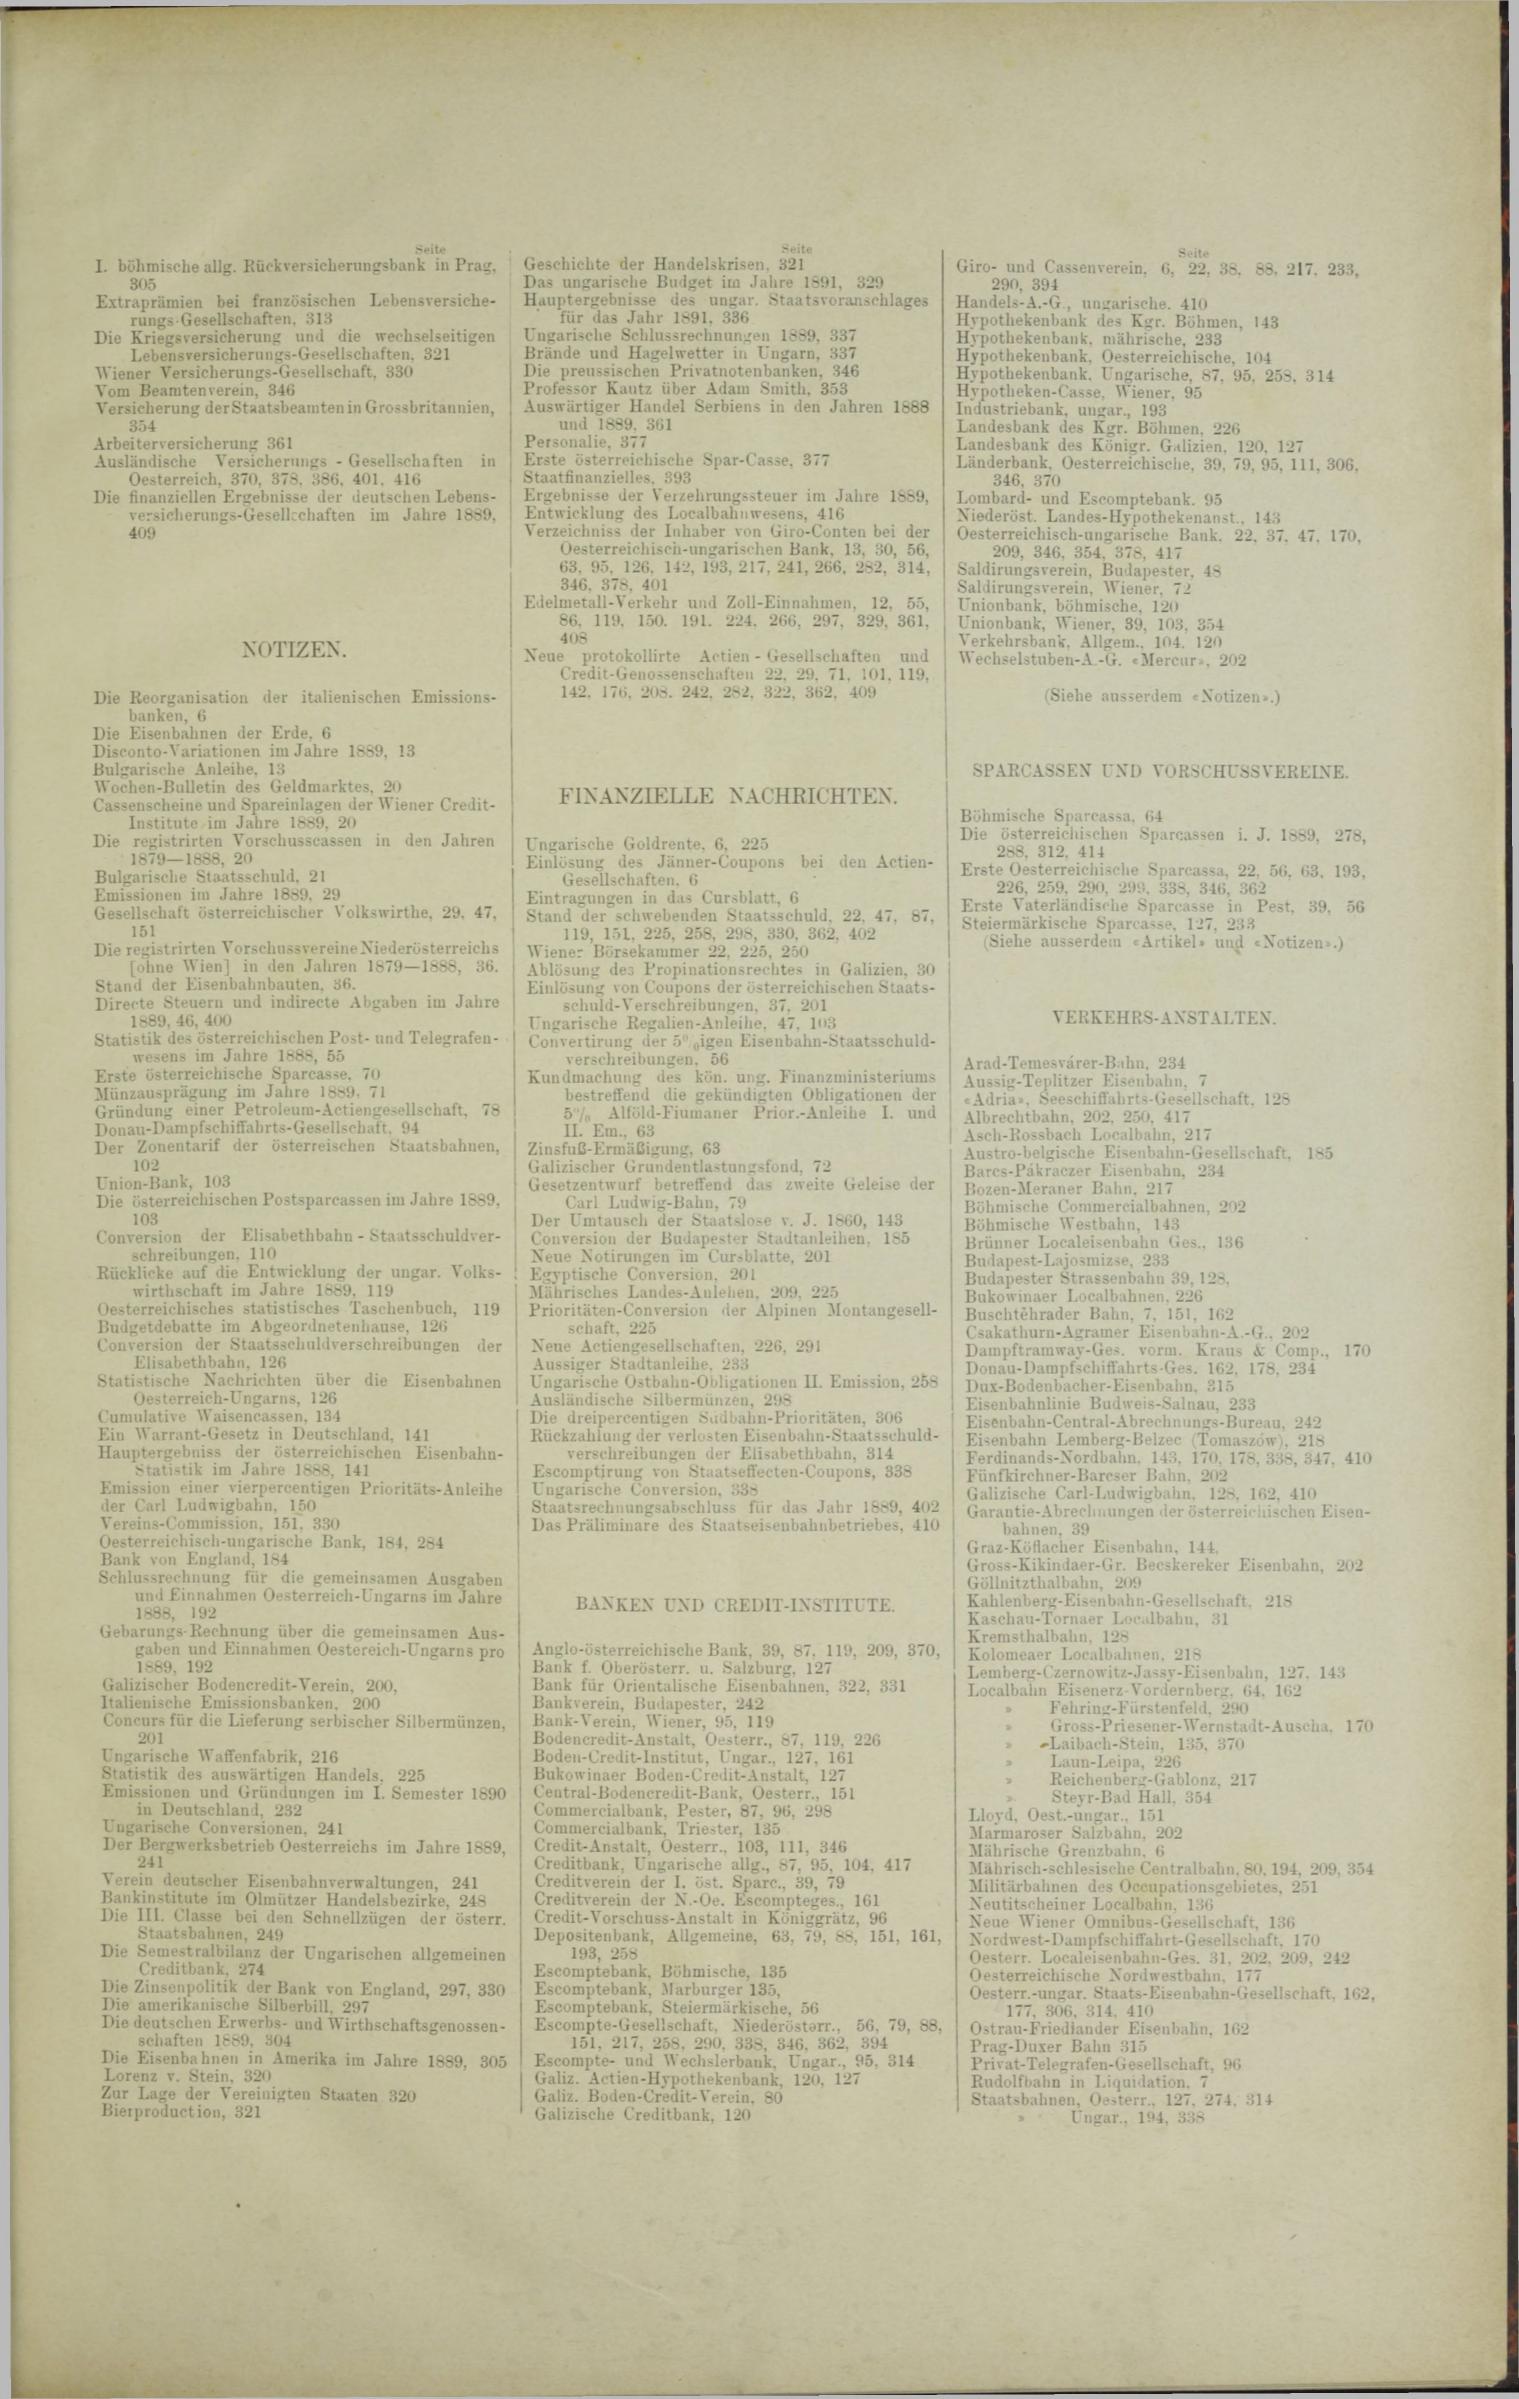 Der Tresor 30.10.1890 - Seite 11